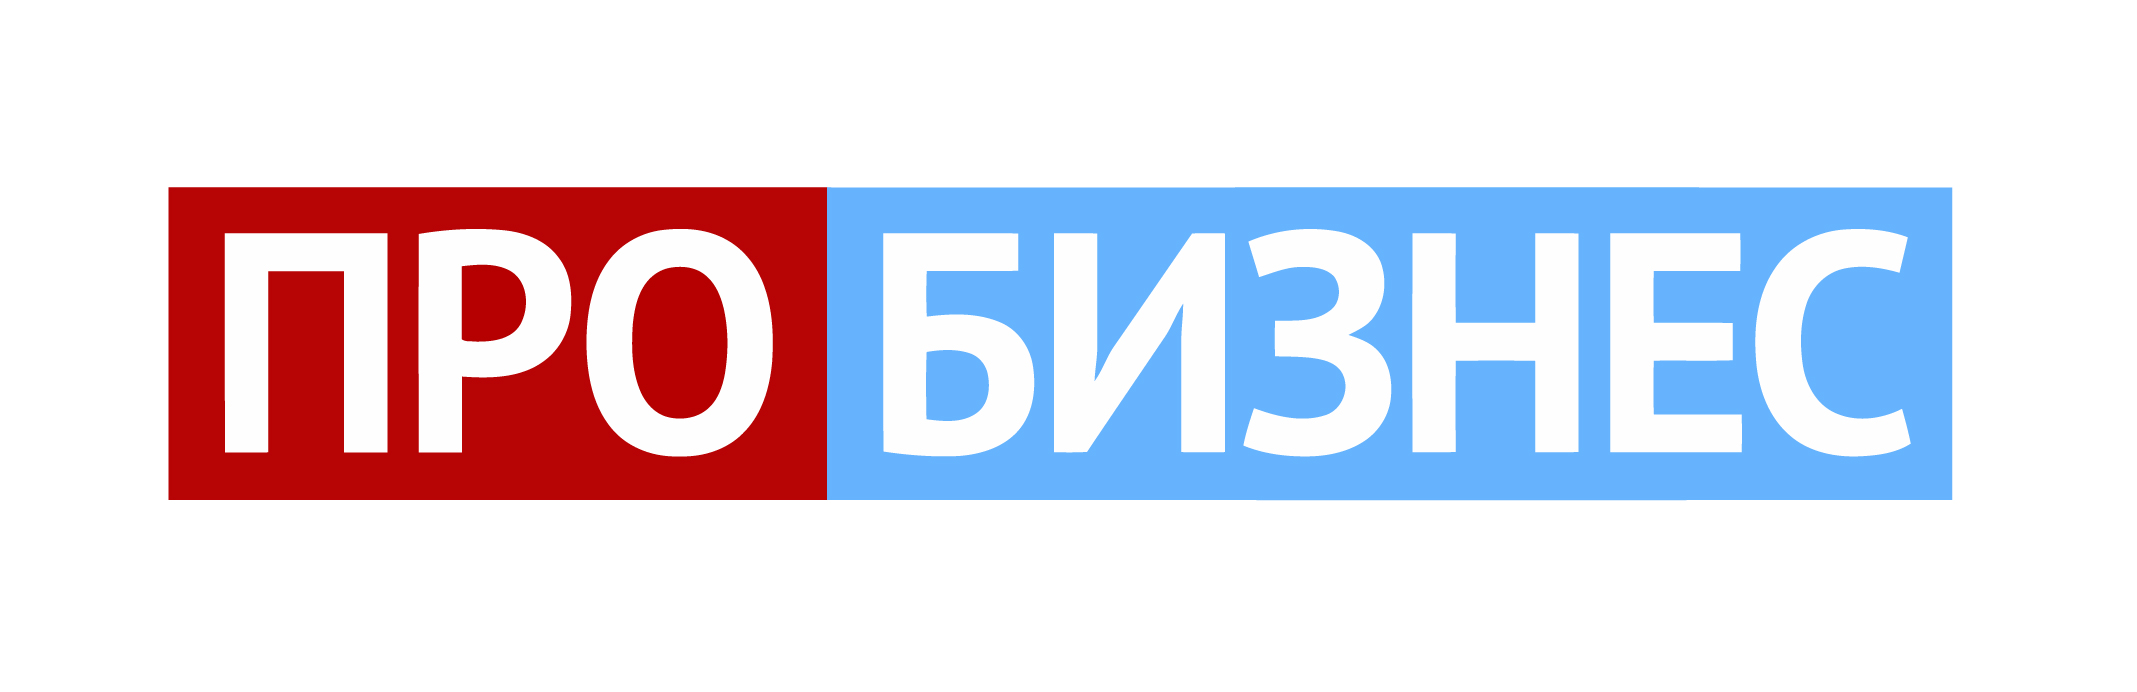 Про бизнес_logo